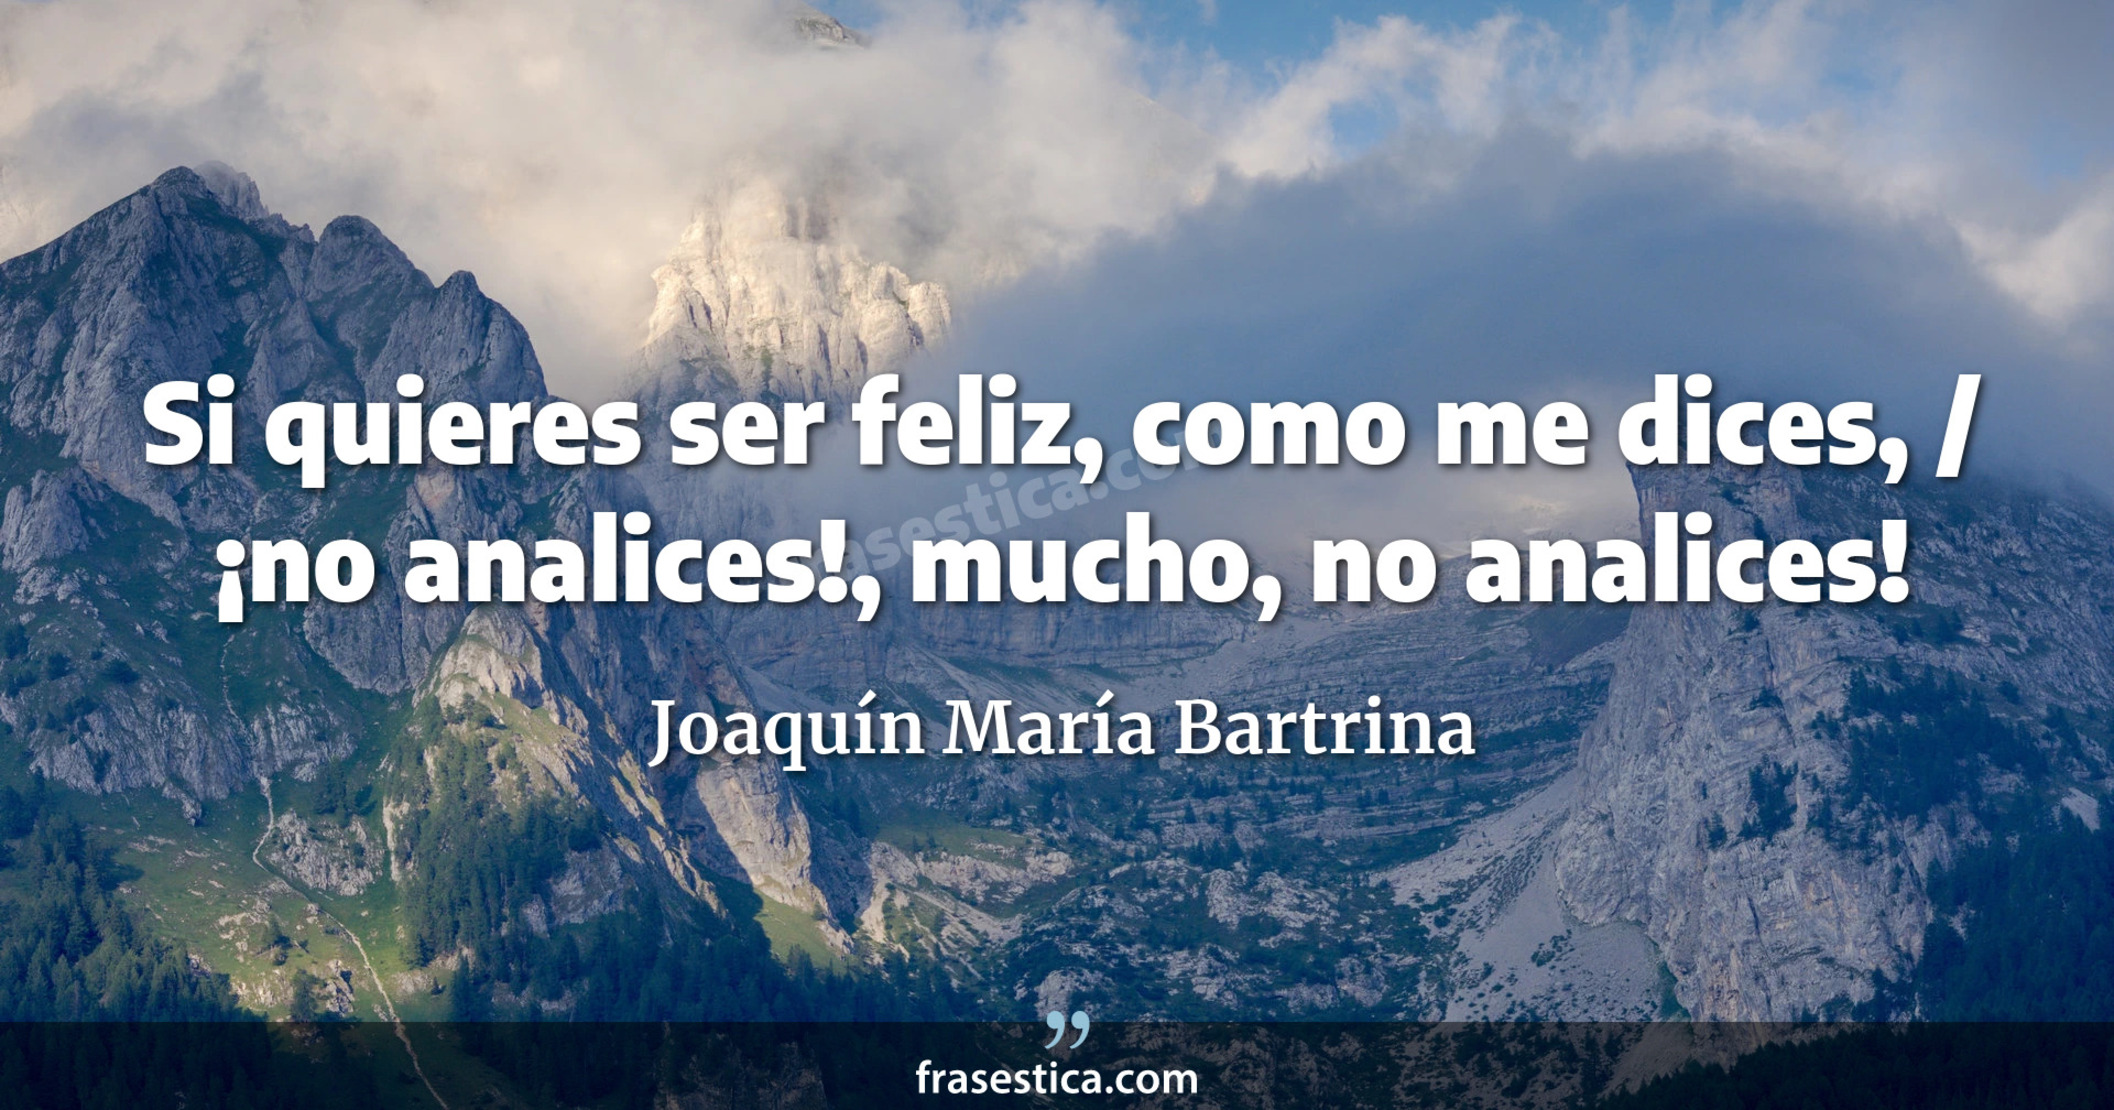 Si quieres ser feliz, como me dices, / ¡no analices!, mucho, no analices! - Joaquín María Bartrina